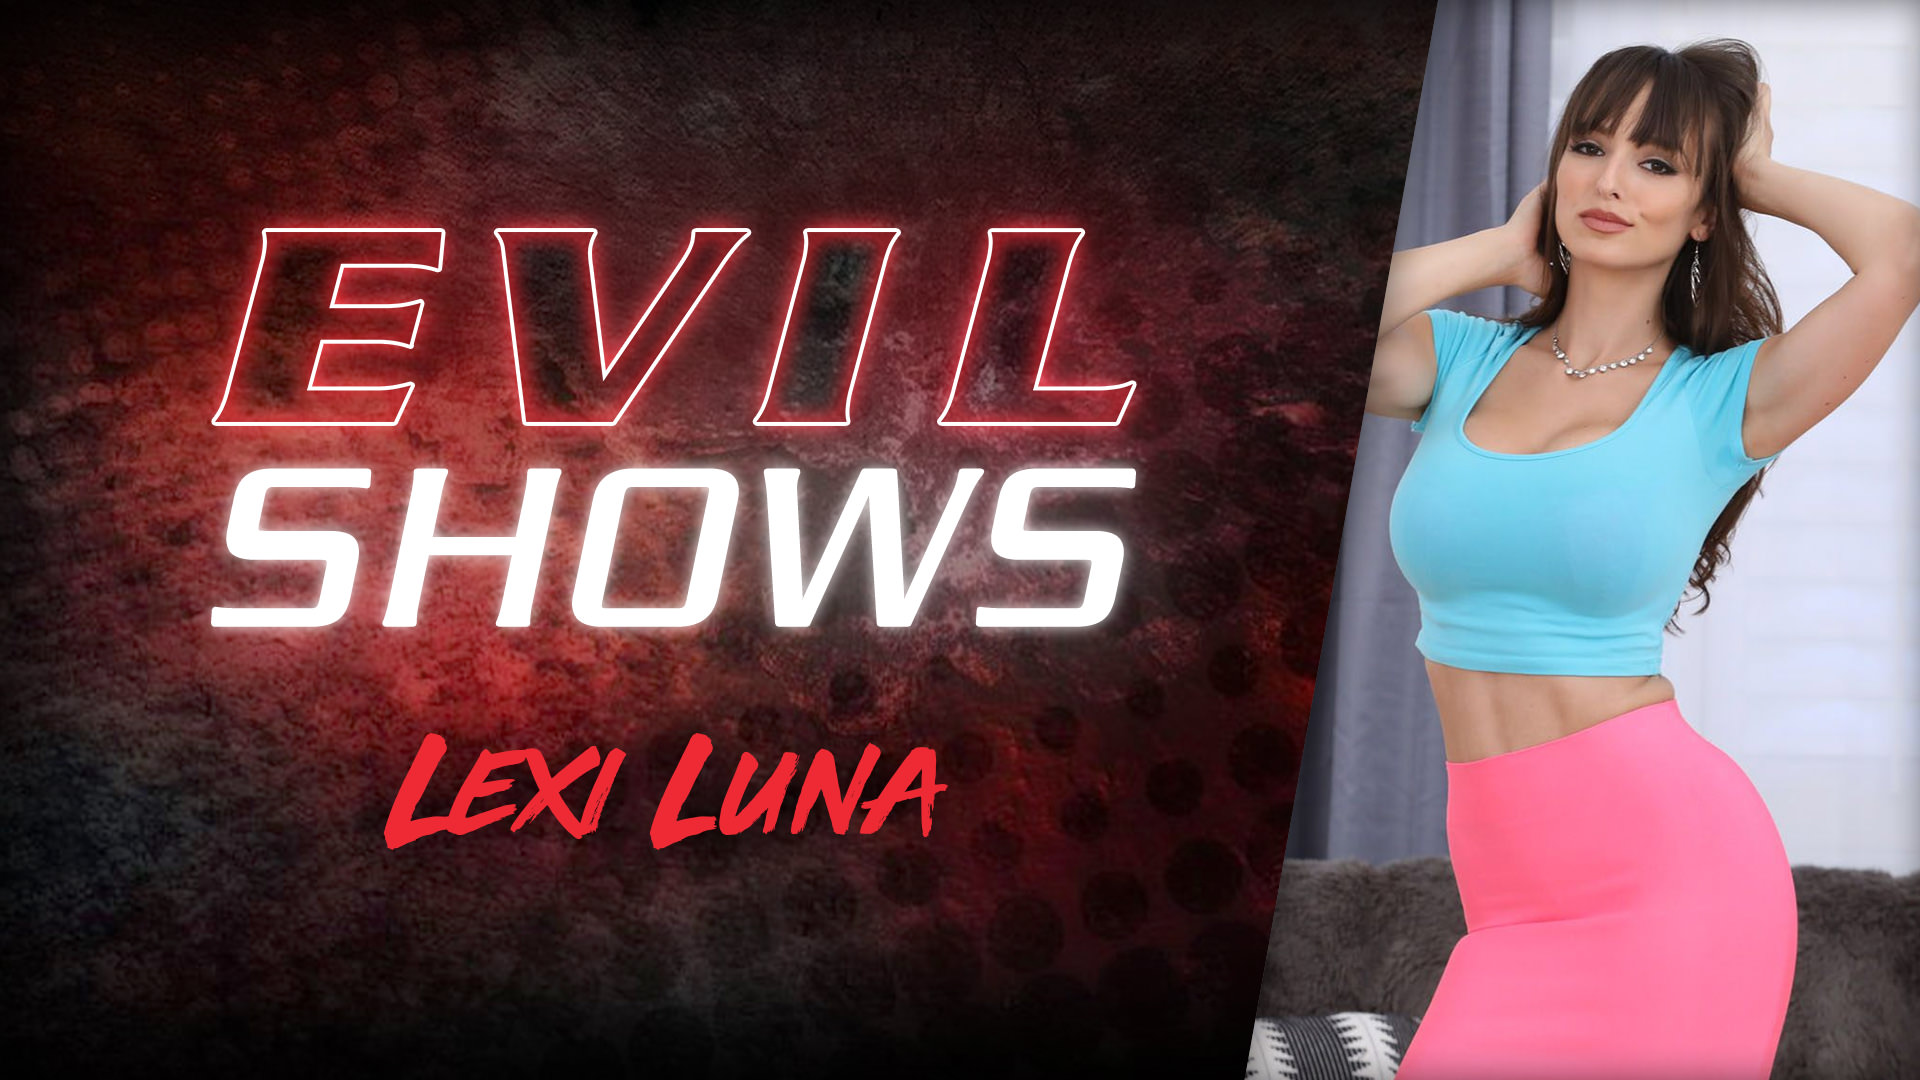 Evil shows lexi luna lexi luna Excited yogi Lexi Luna plays